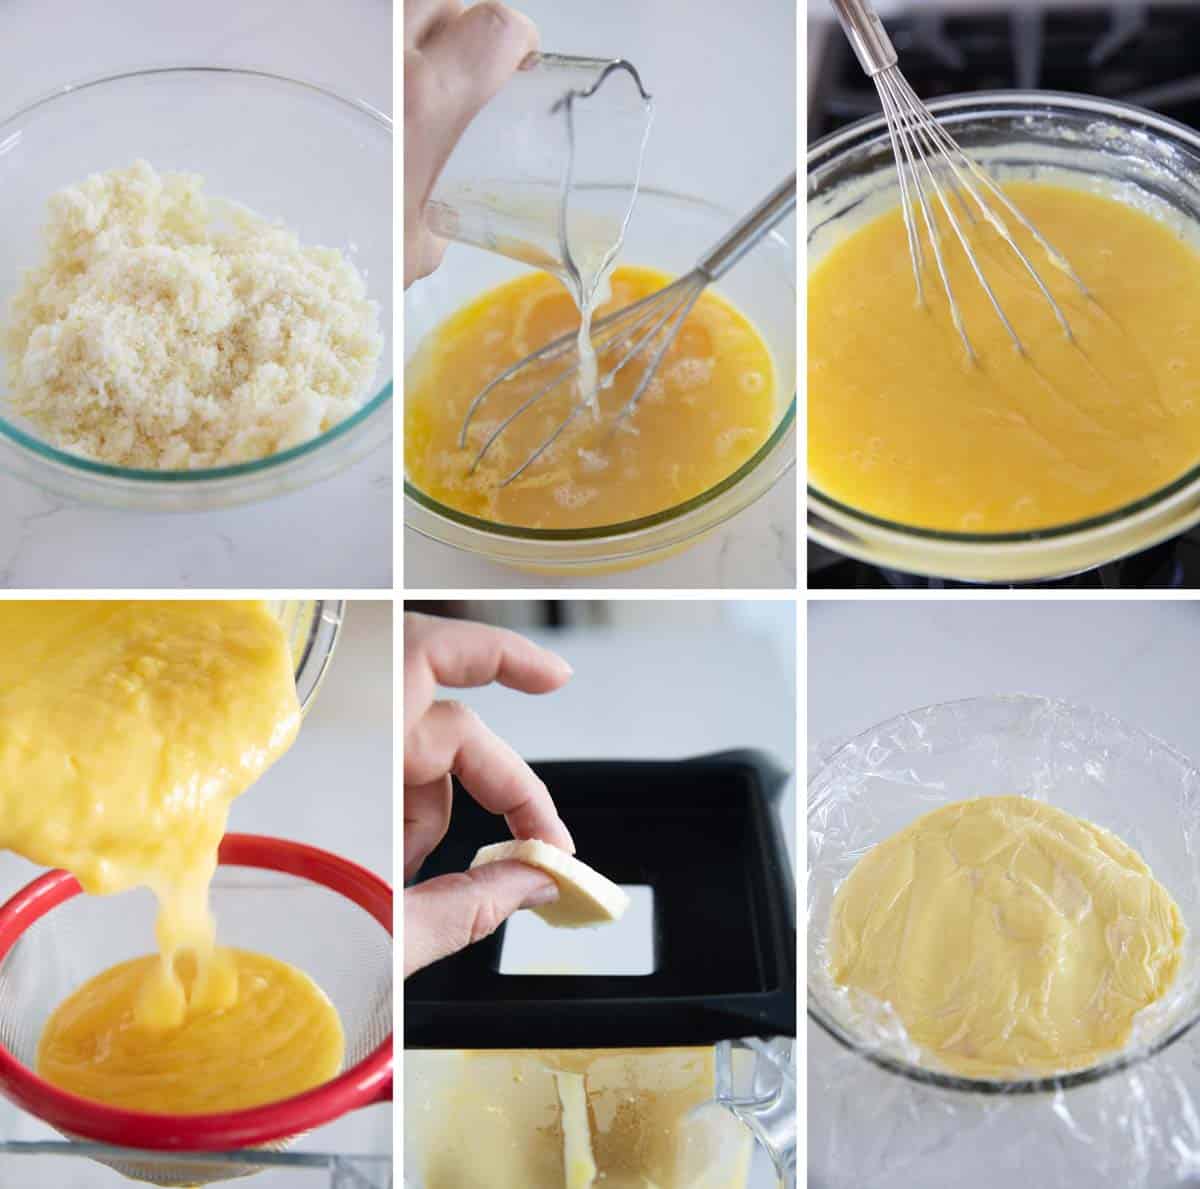 Steps to make filling for French lemon tart.